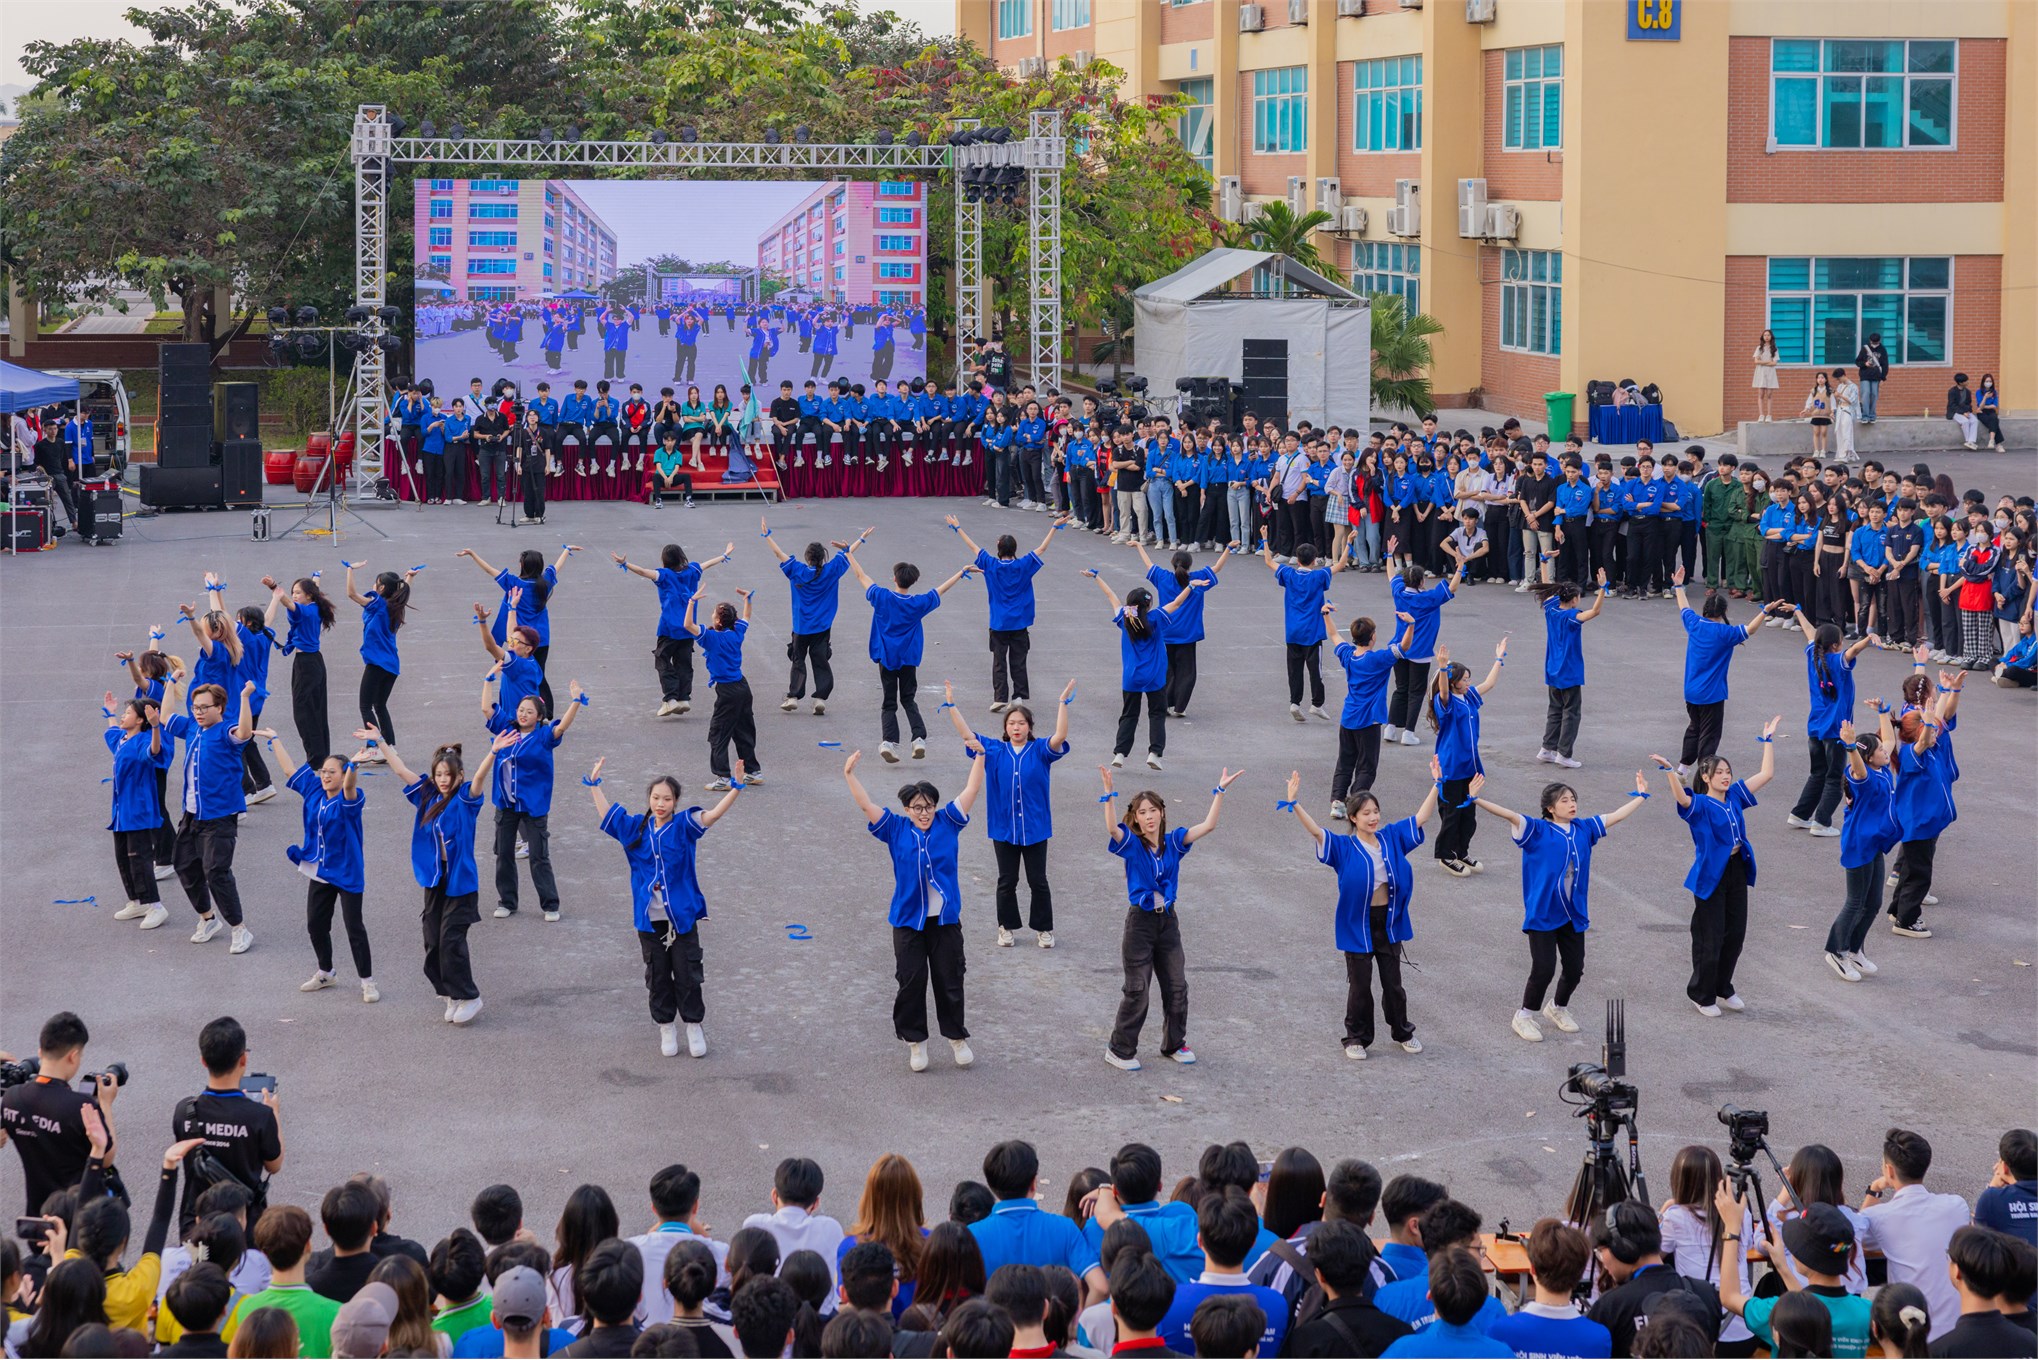 Sinh viên Trường Ngoại ngữ - Du lịch, Đại học Công nghiệp Hà Nội tạo dấu ấn tại Ngày hội kết nối sinh viên HaUI CONNECTION 2023